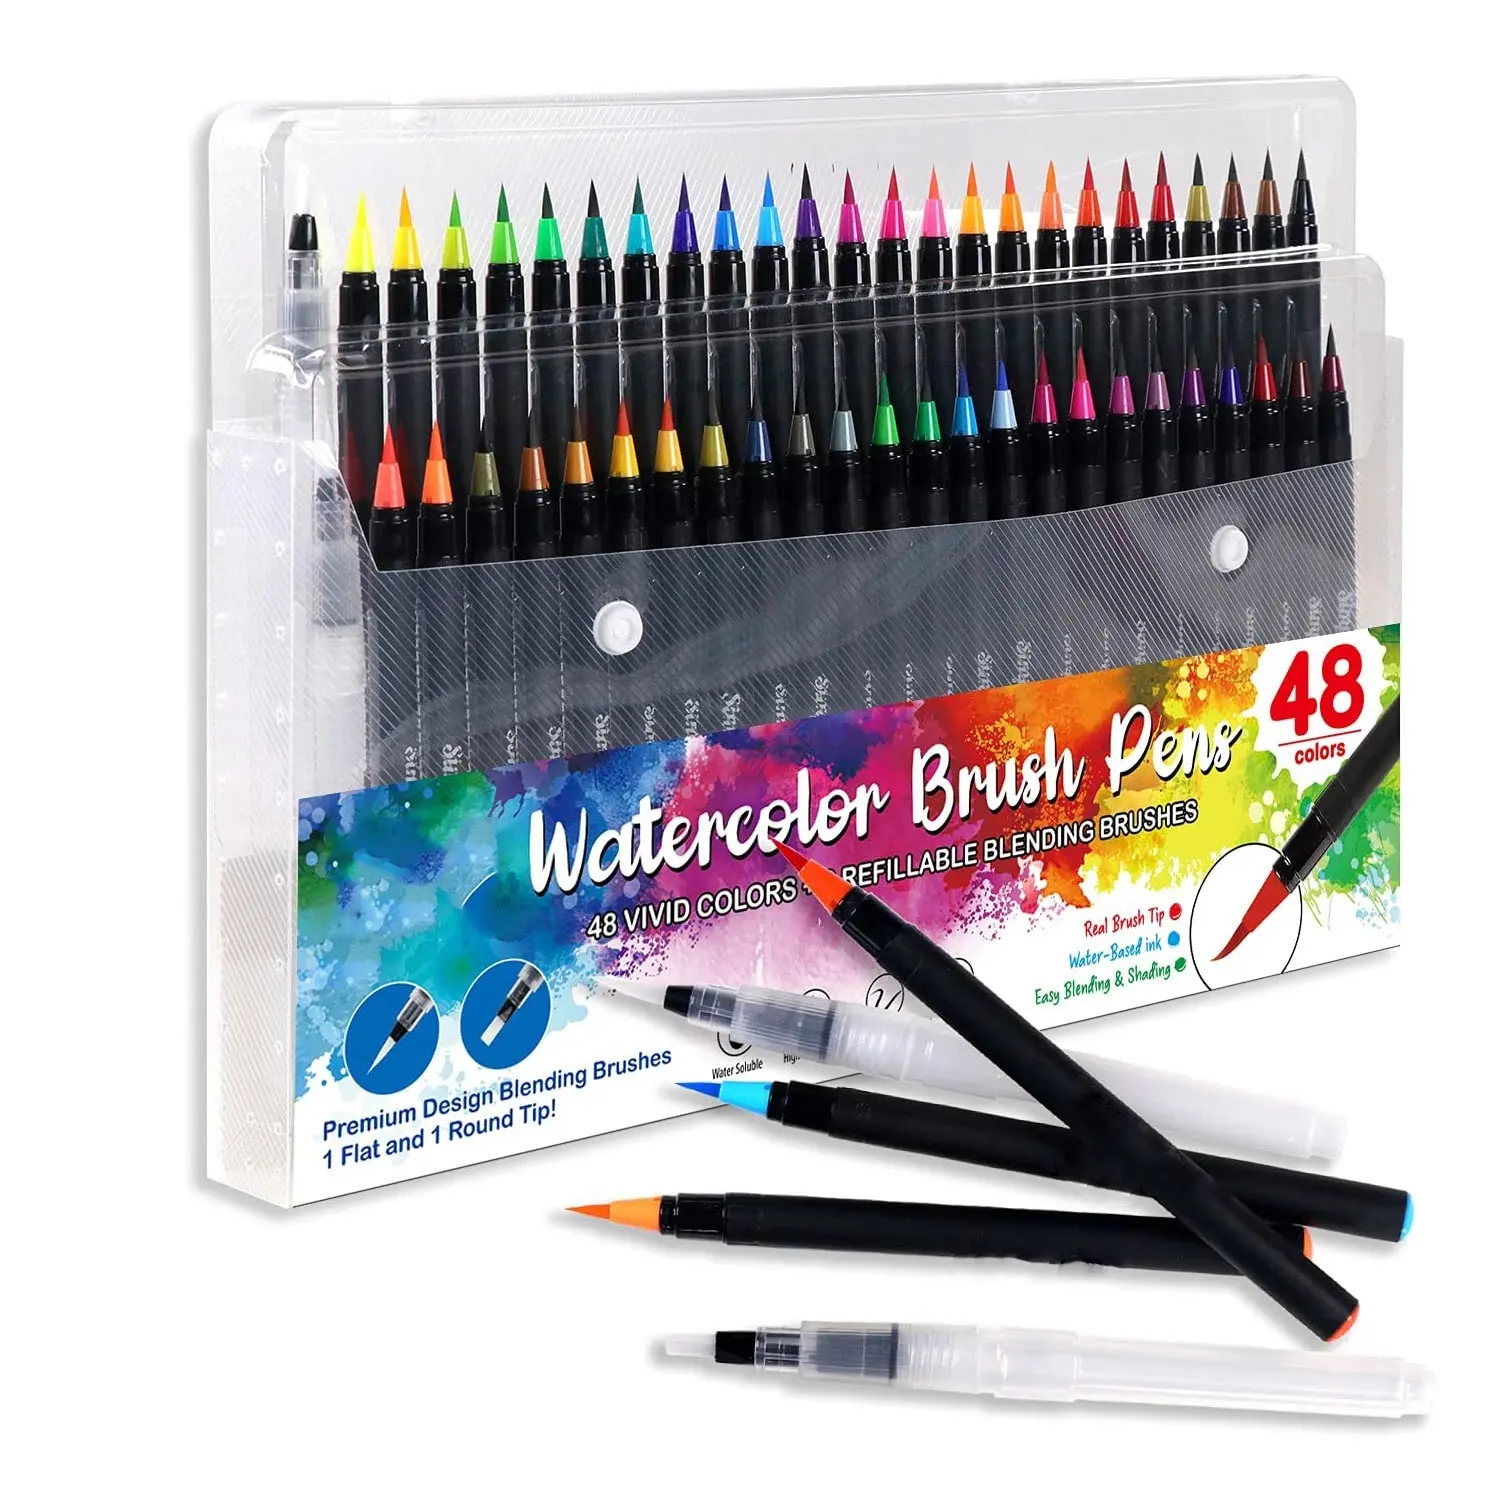 watercolor brush pens 48 colors brush pen with 2 water brush in pp bag for art